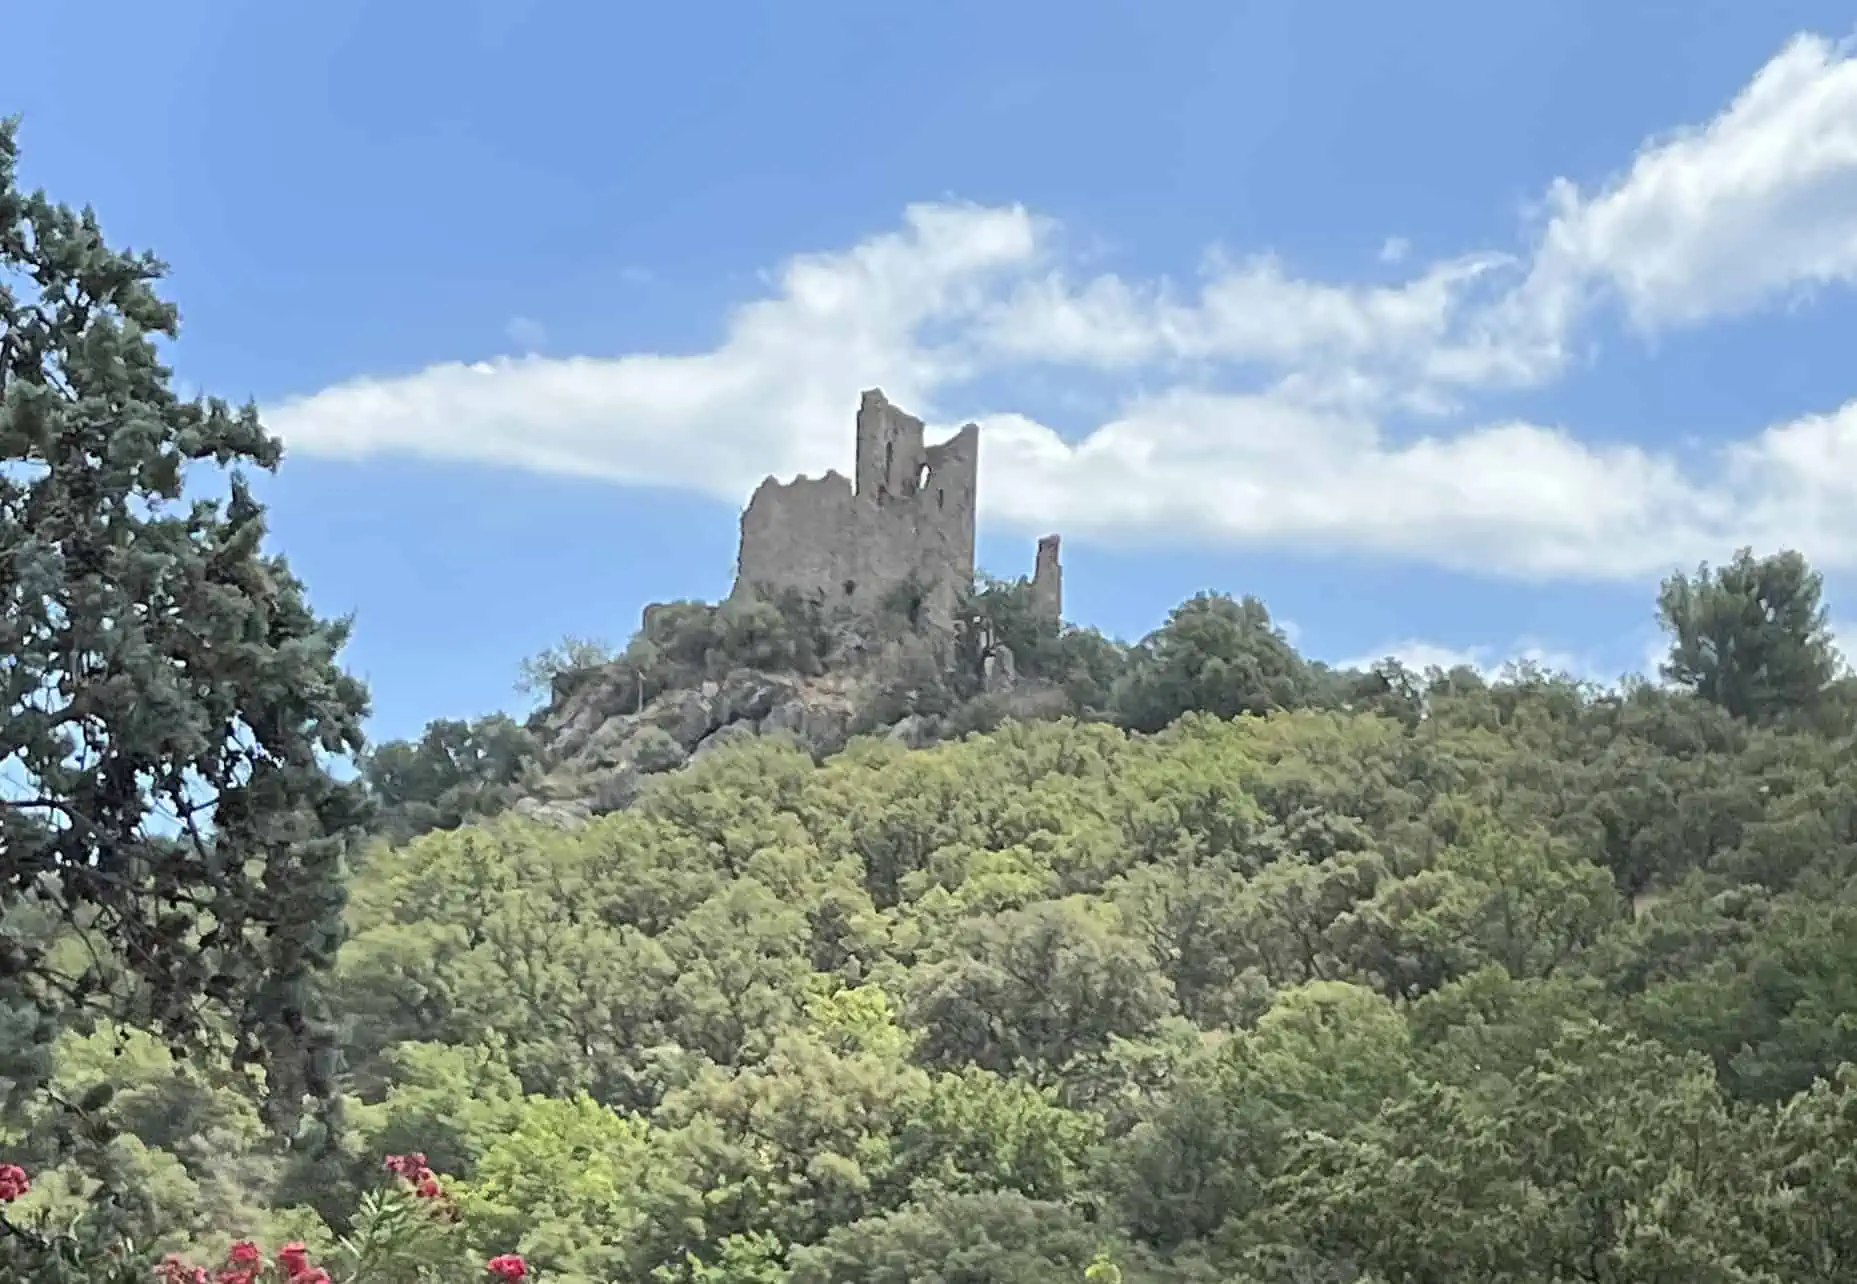 Burg Ruine im Bergdorf Grimaud an der Cote d Azur in Frankreich.